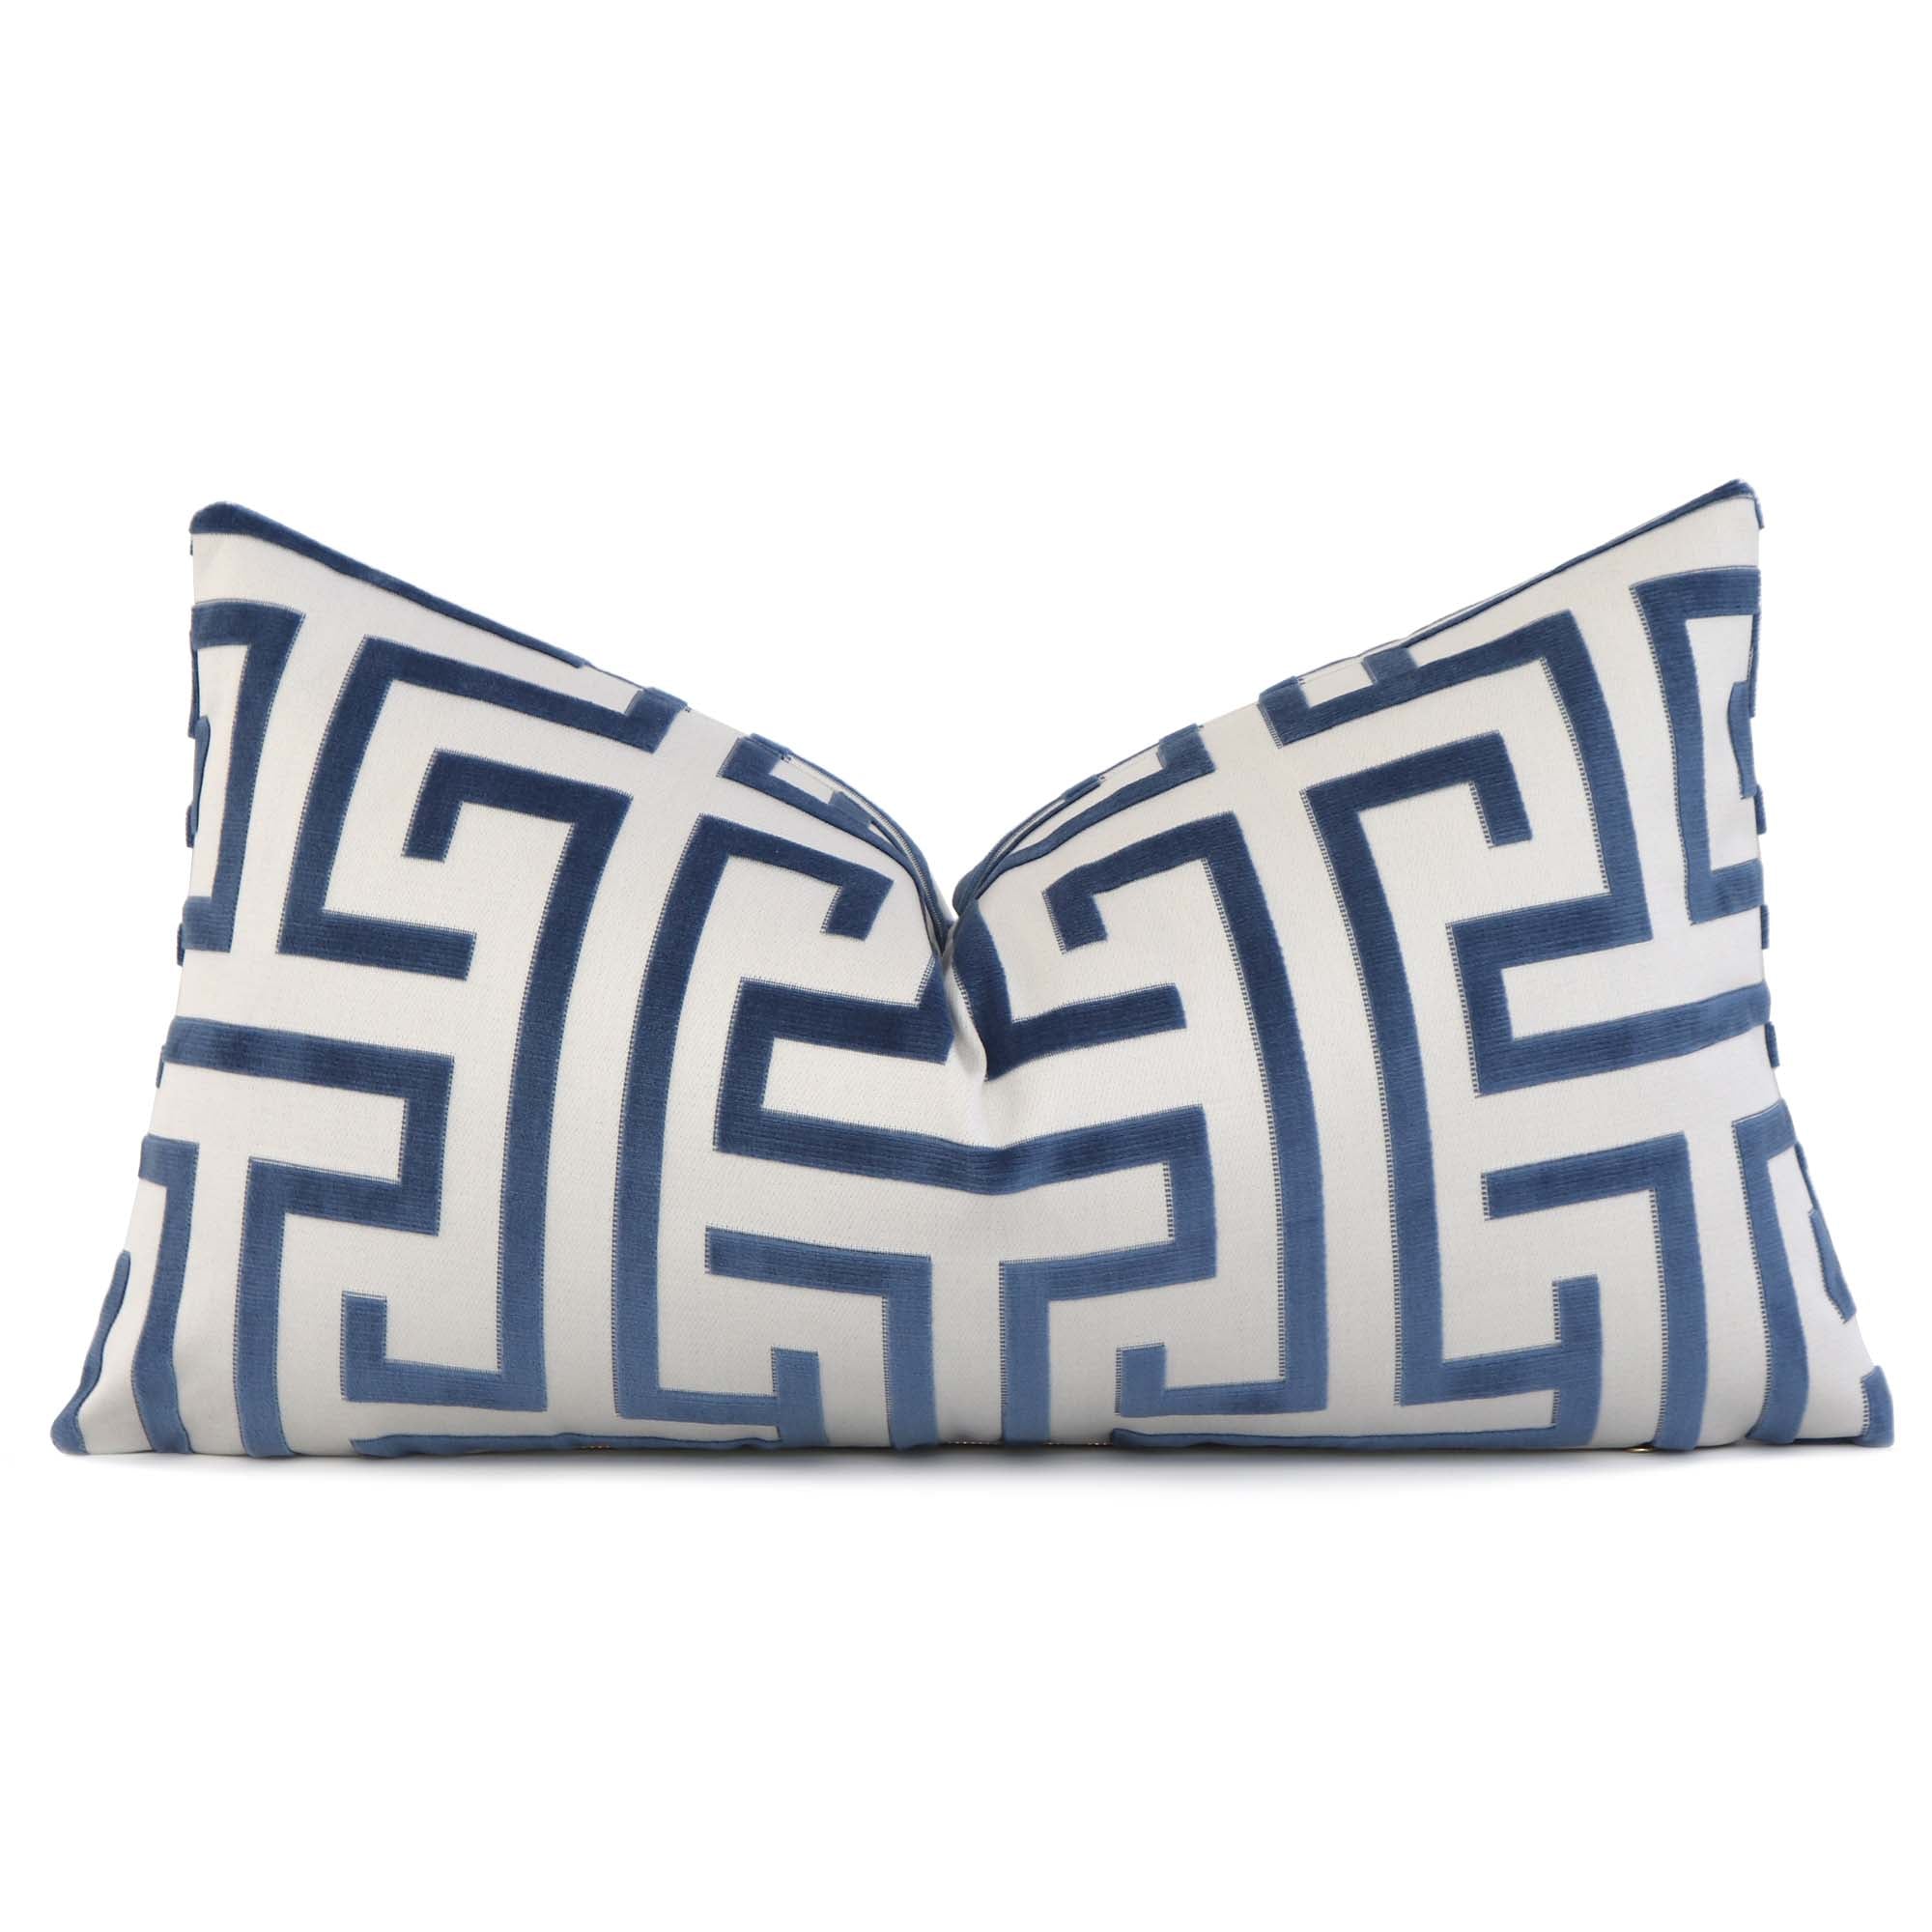 Thibaut Ming Trail Velvet Navy Blue Luxury Designer Lumbar Throw Pillow Cover